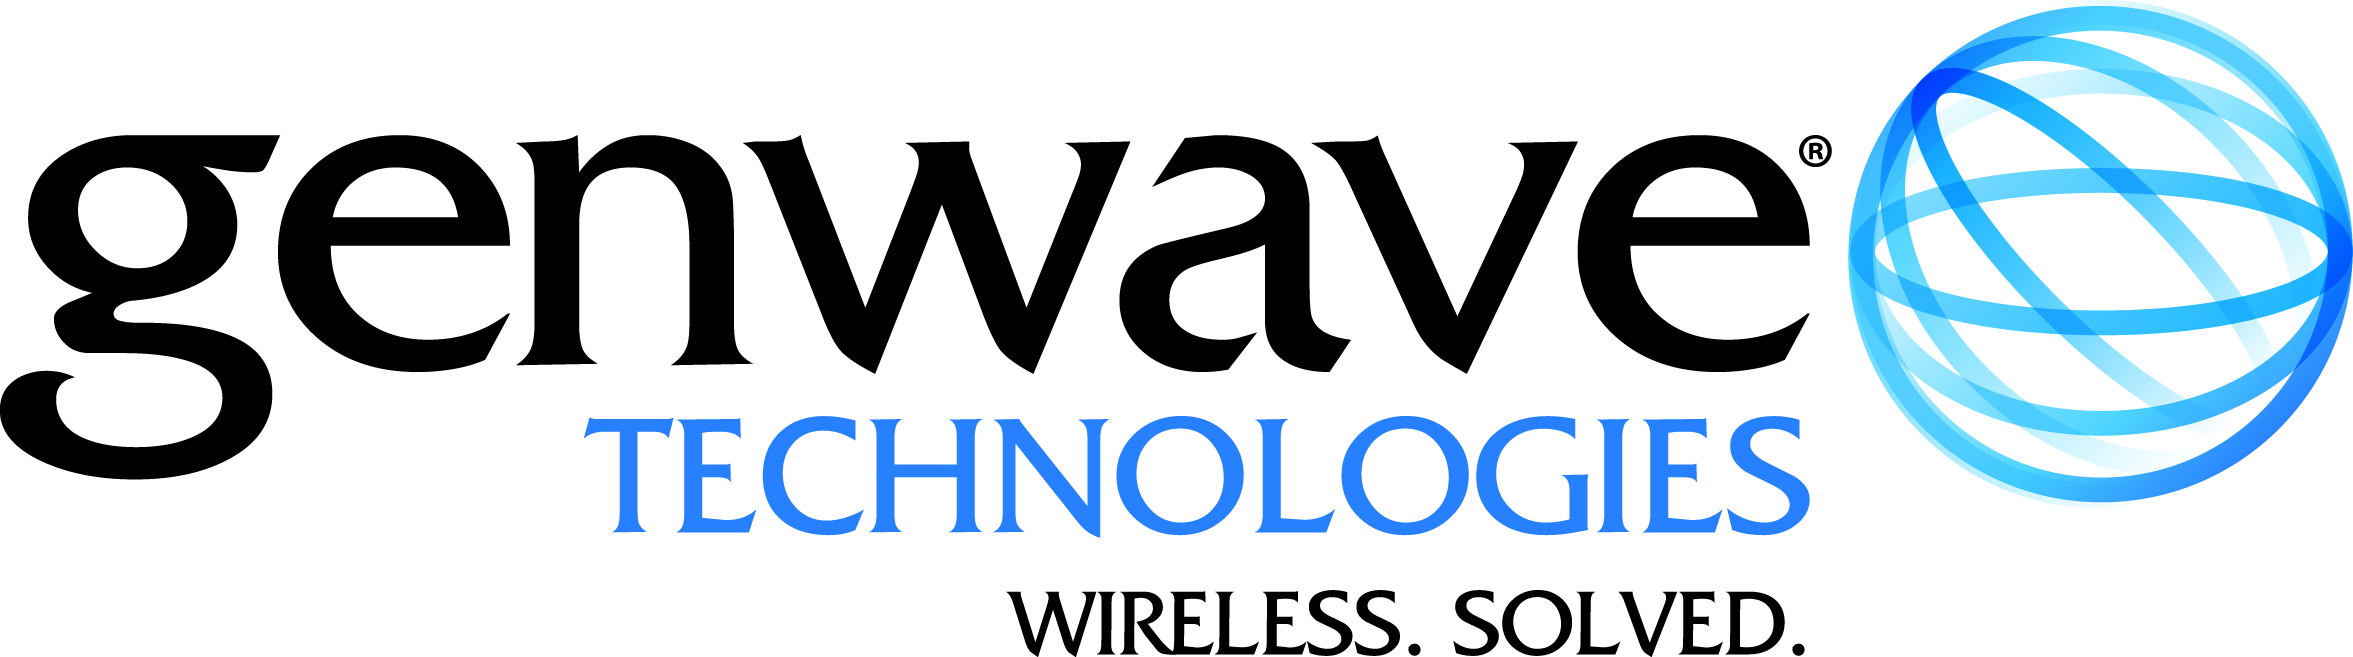 Genwave_Technologies